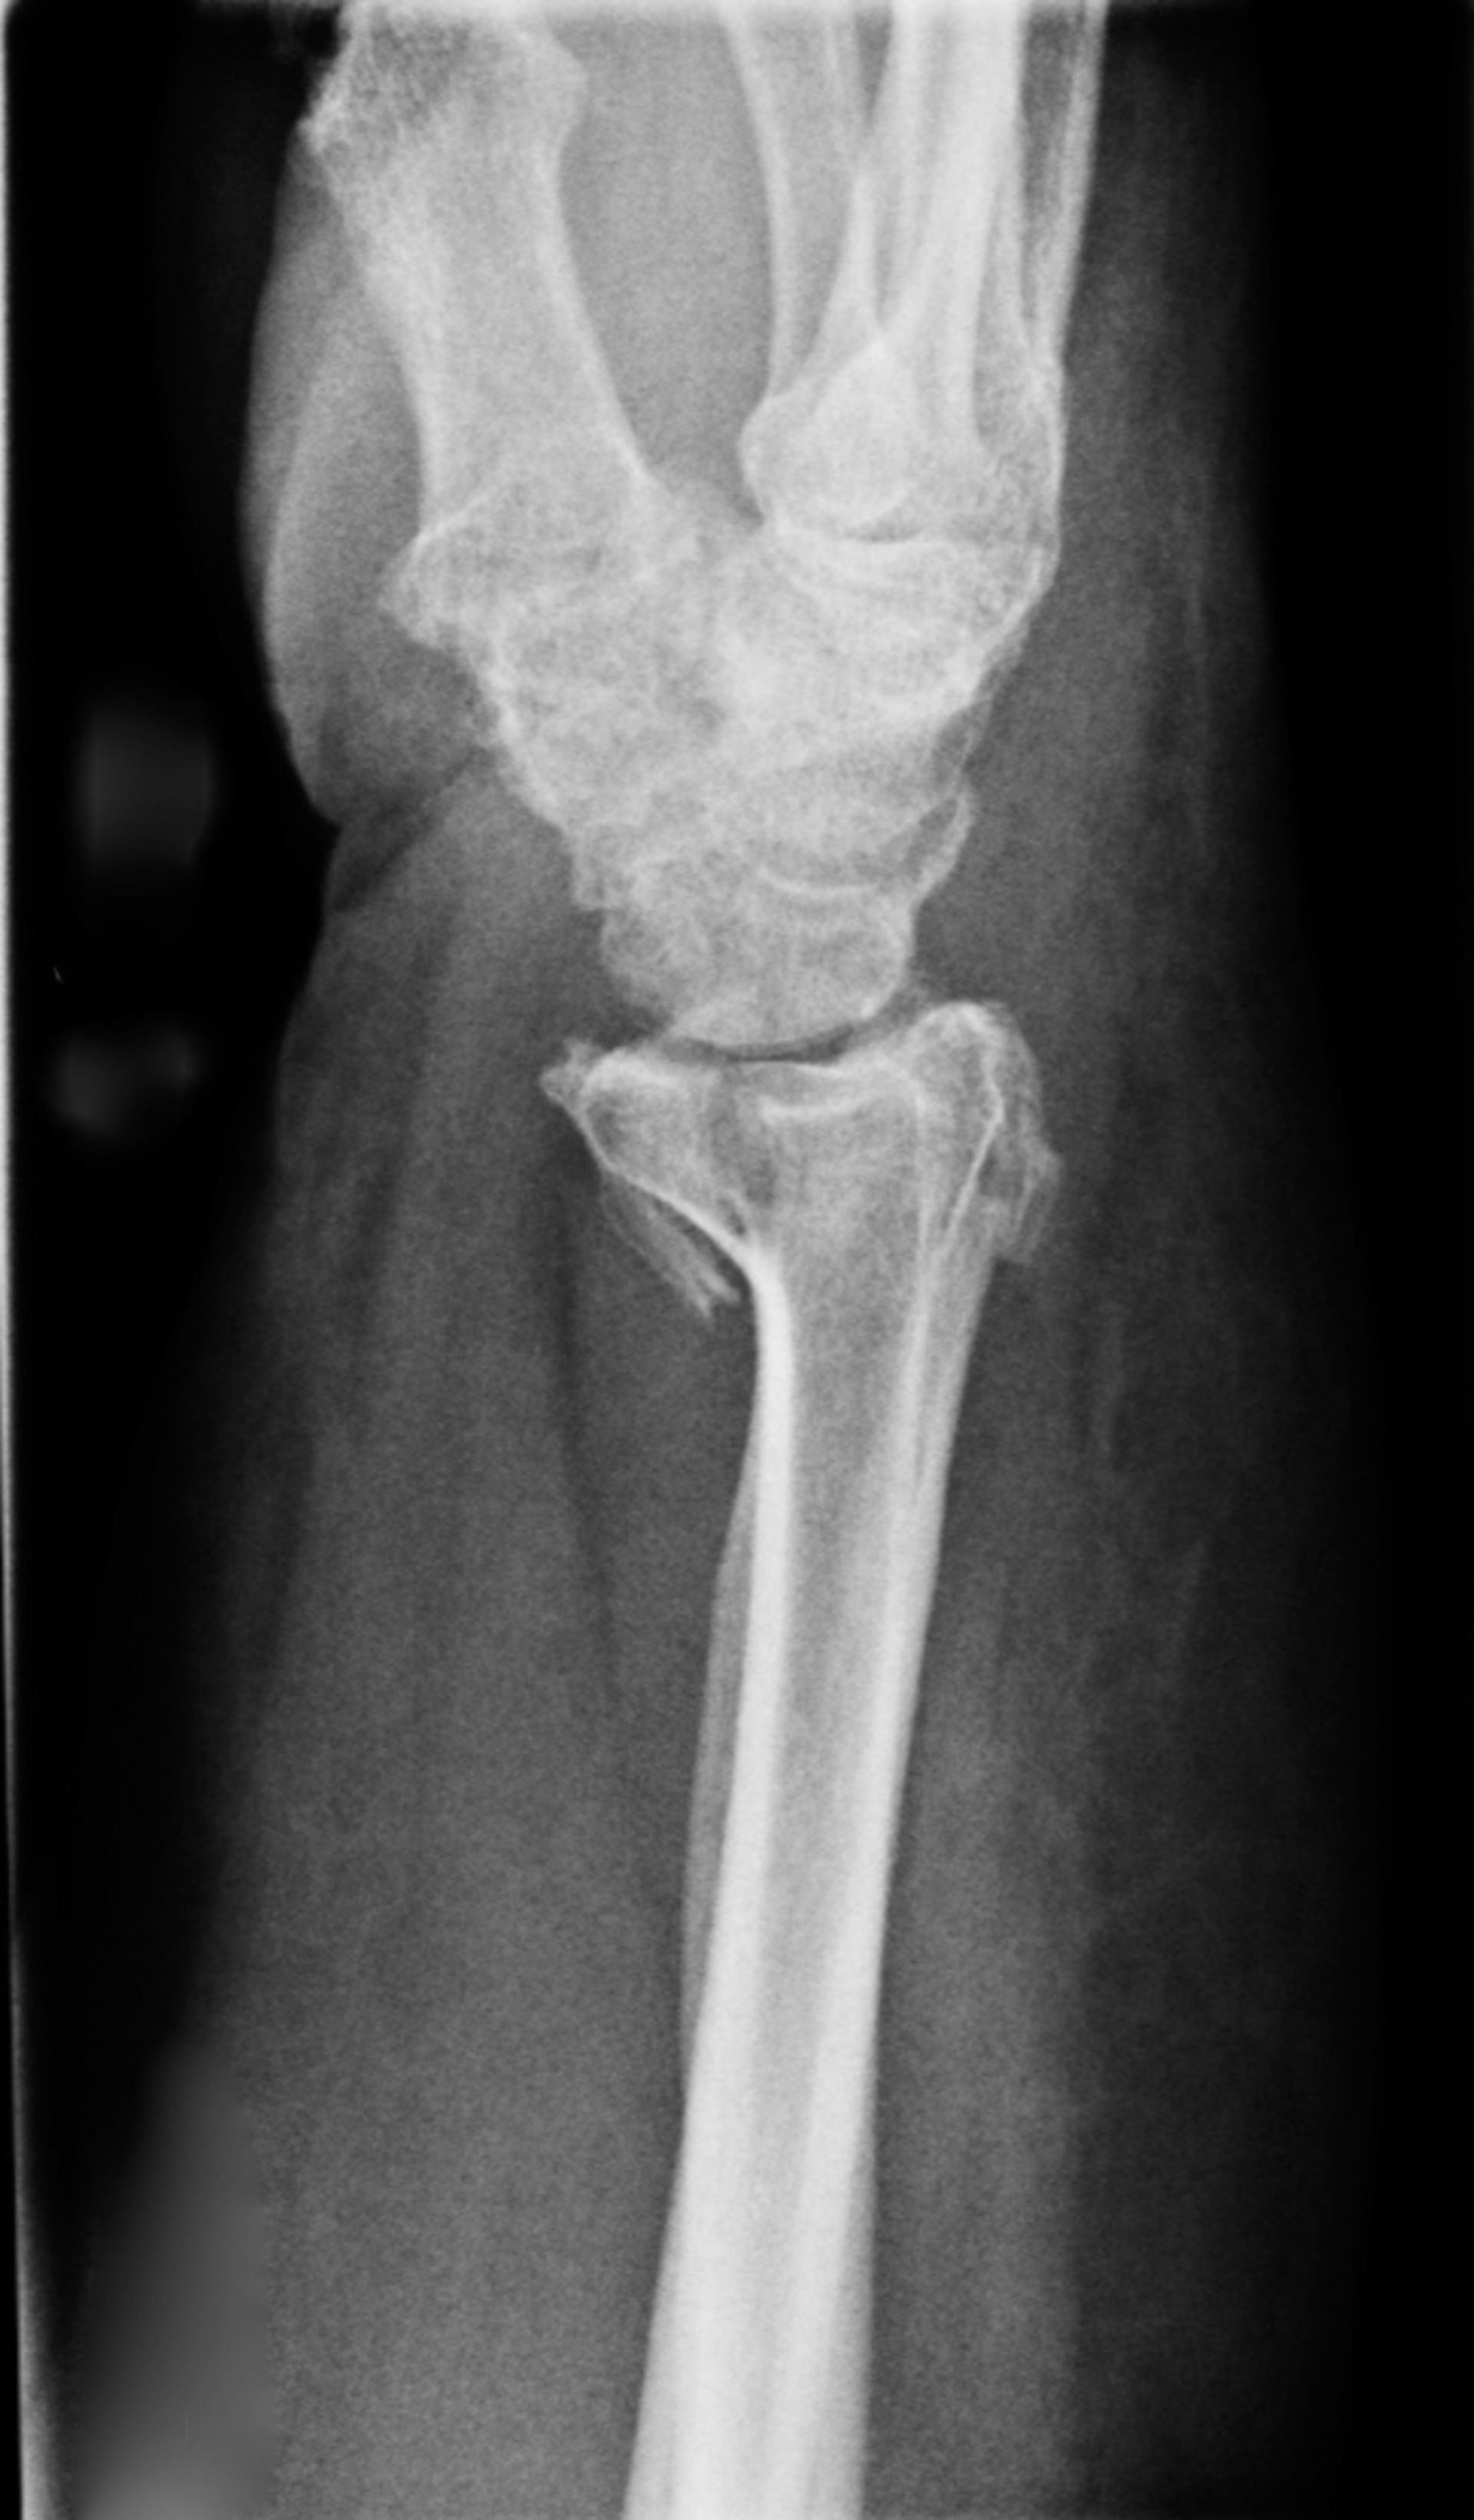 Röntgen des Handgelenkes mit distaler Radiusfraktur und resultierender Nervenkompression